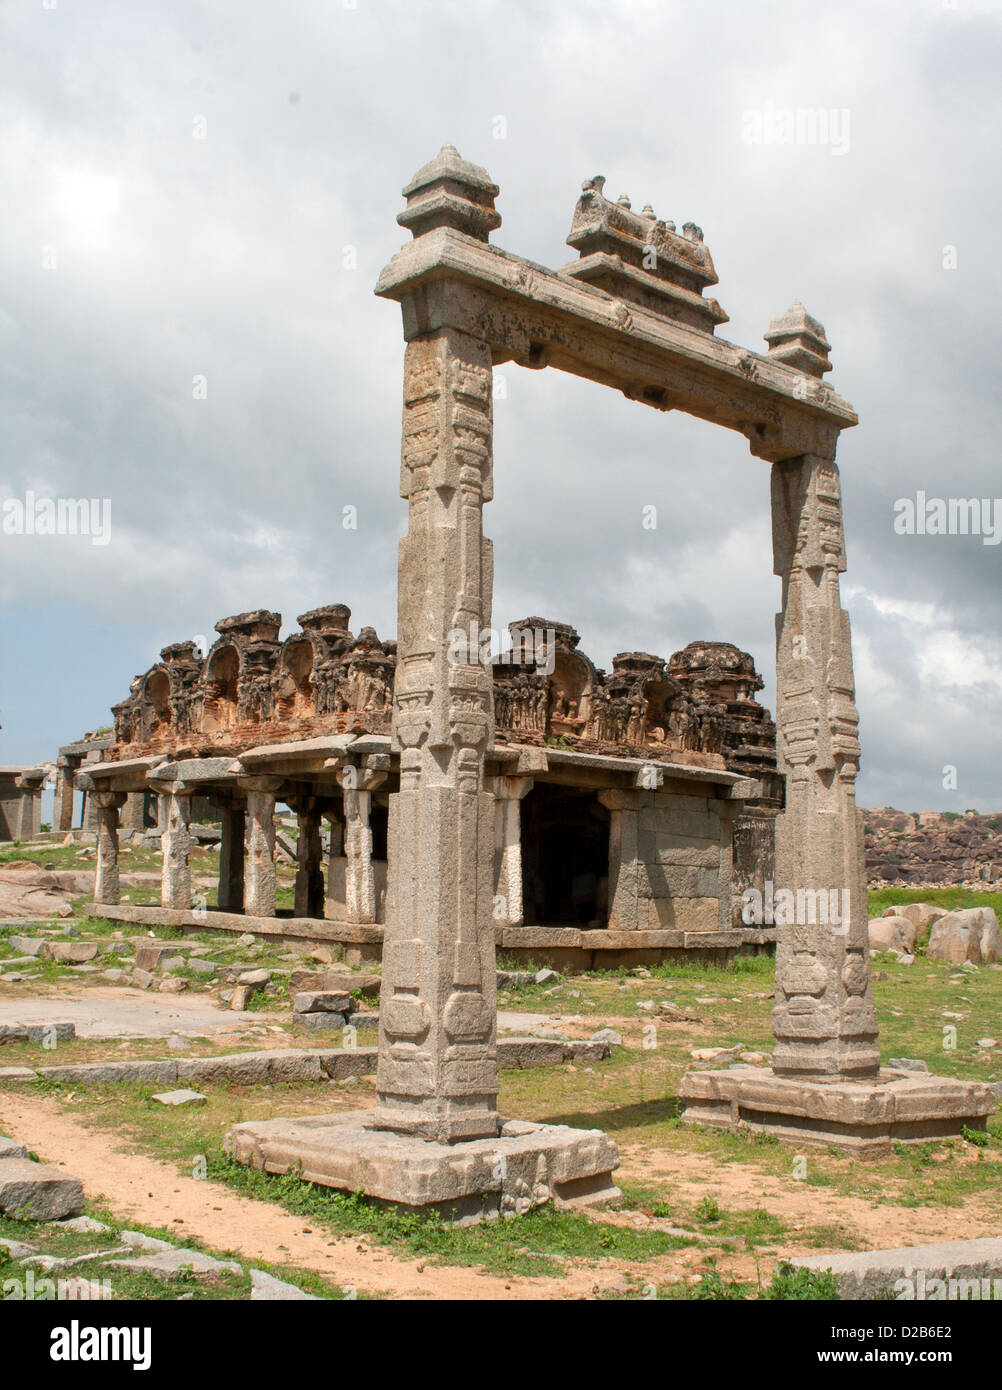 Ruine de Temple Hindou, Hampi, Karnataka, Inde Banque D'Images